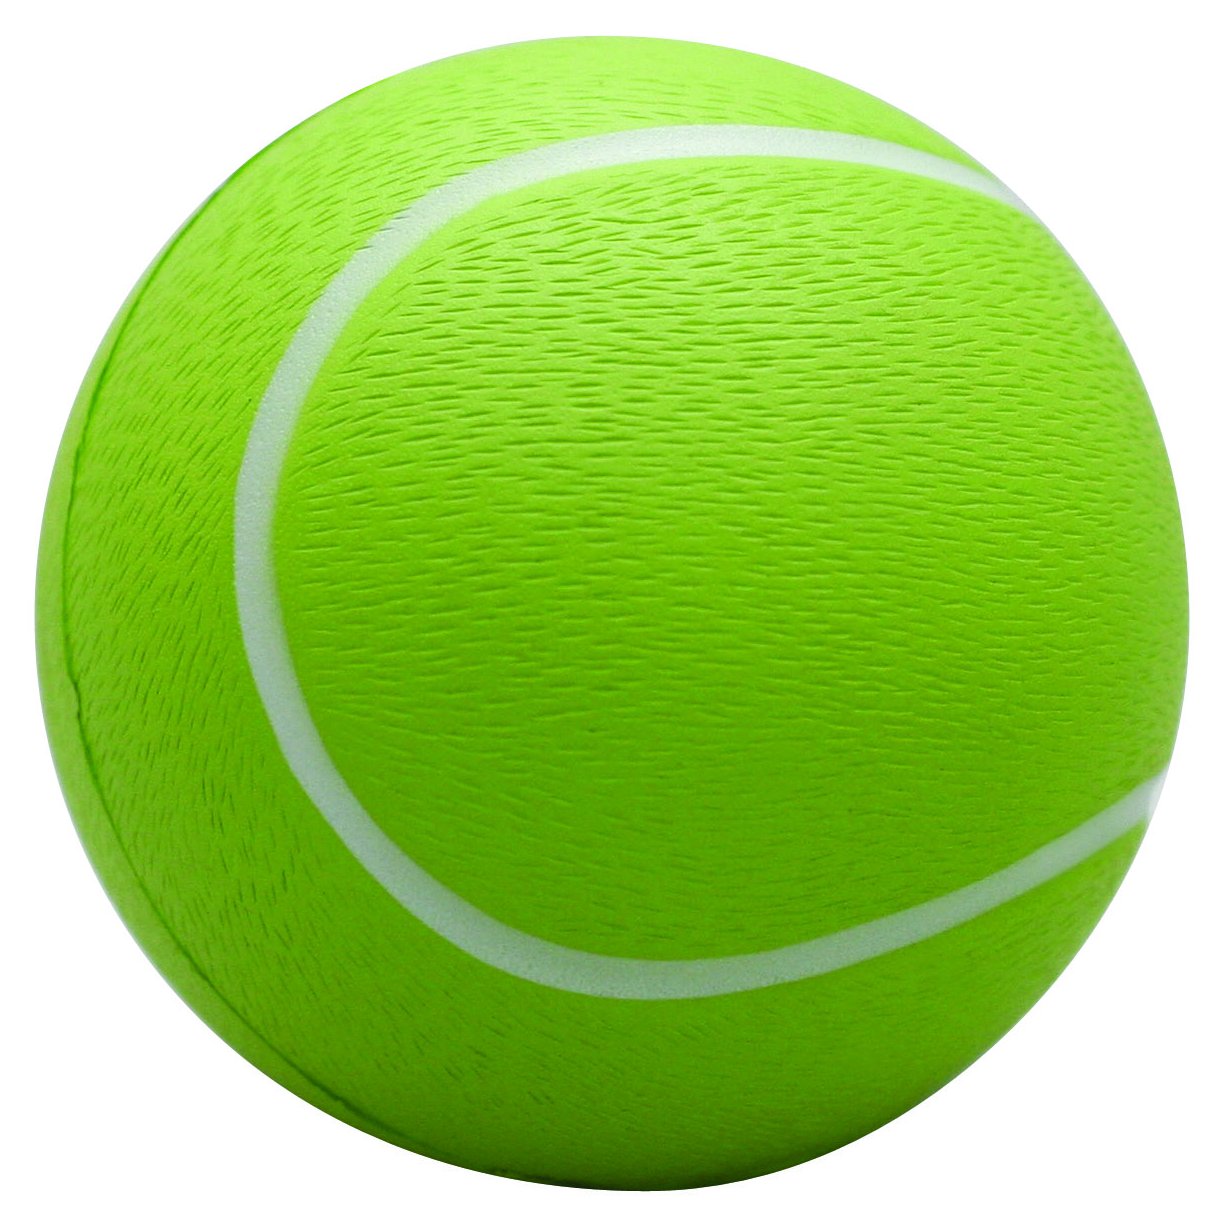 Ball Tennis Green - ClipArt Best